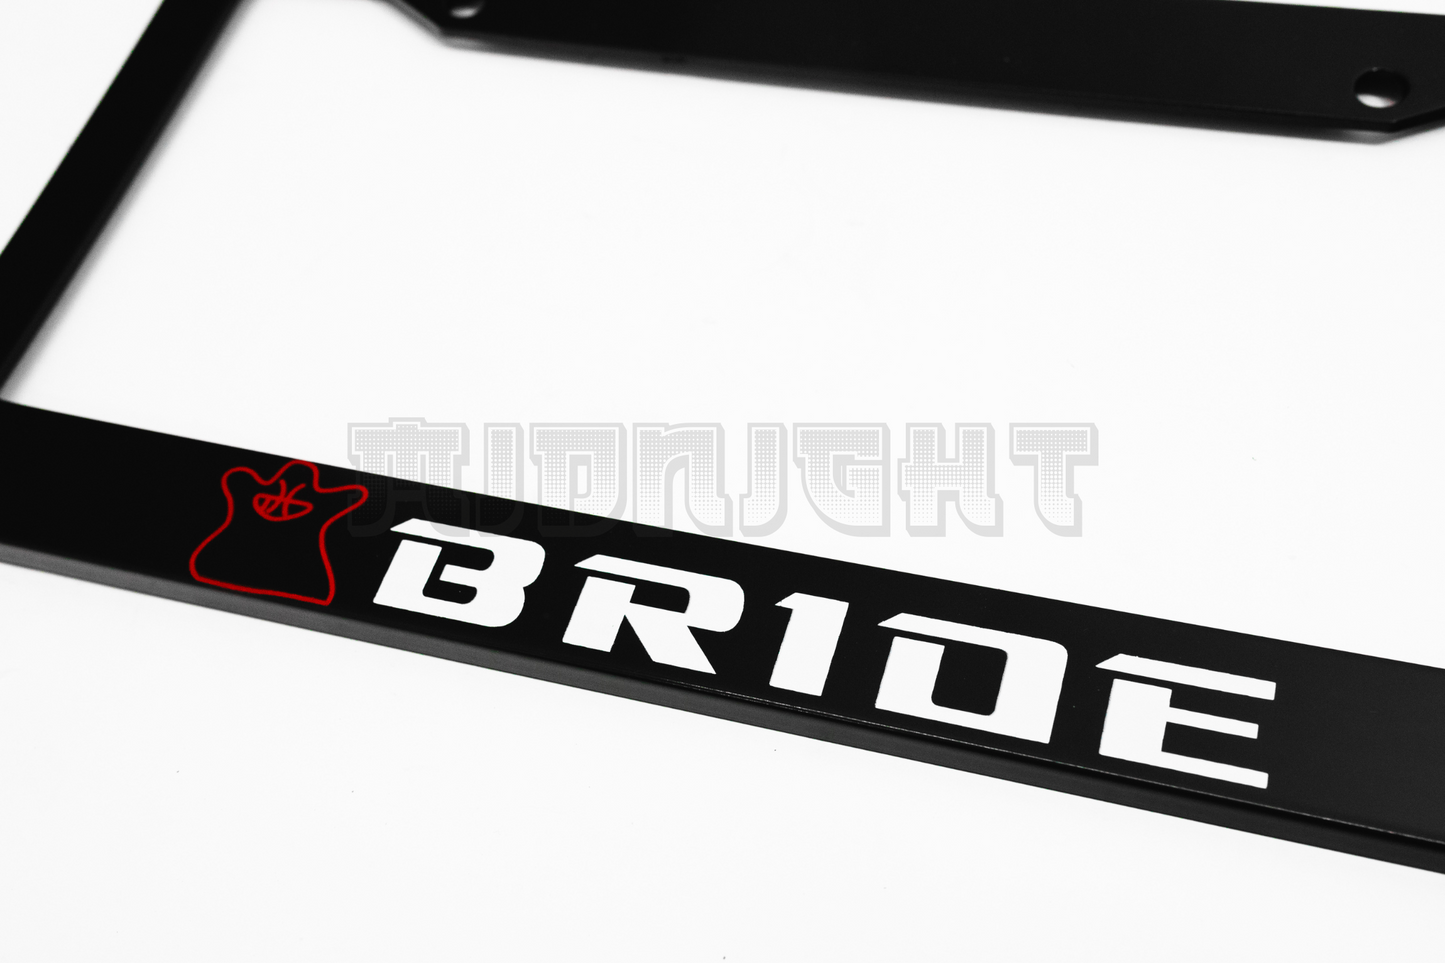 BRIDE License Plate Frame